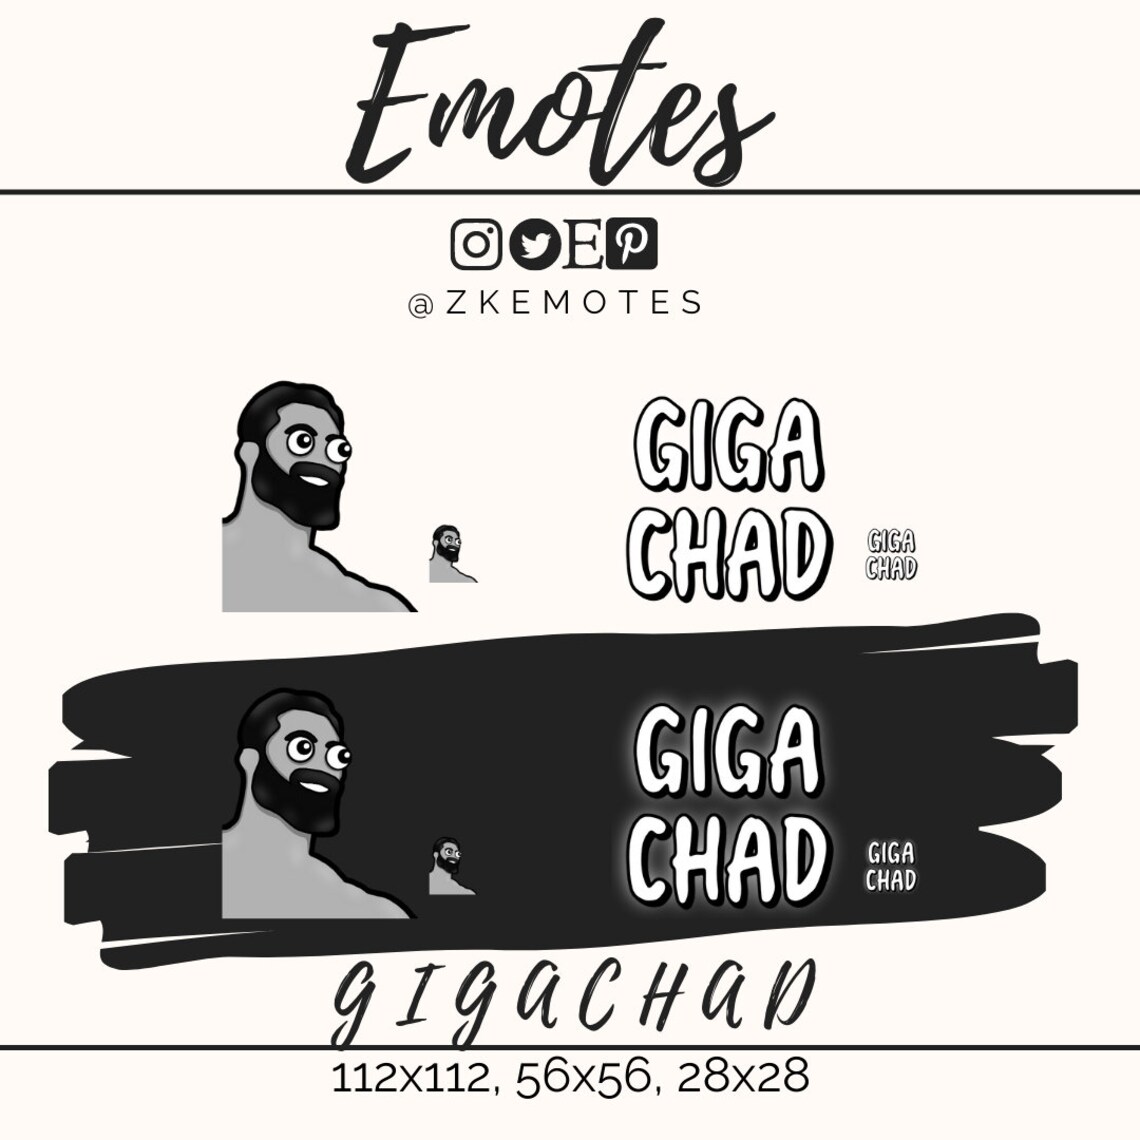 Gigachad Emote GIGACHAD MEME Twitch Emotes Discord Emotes - Etsy UK